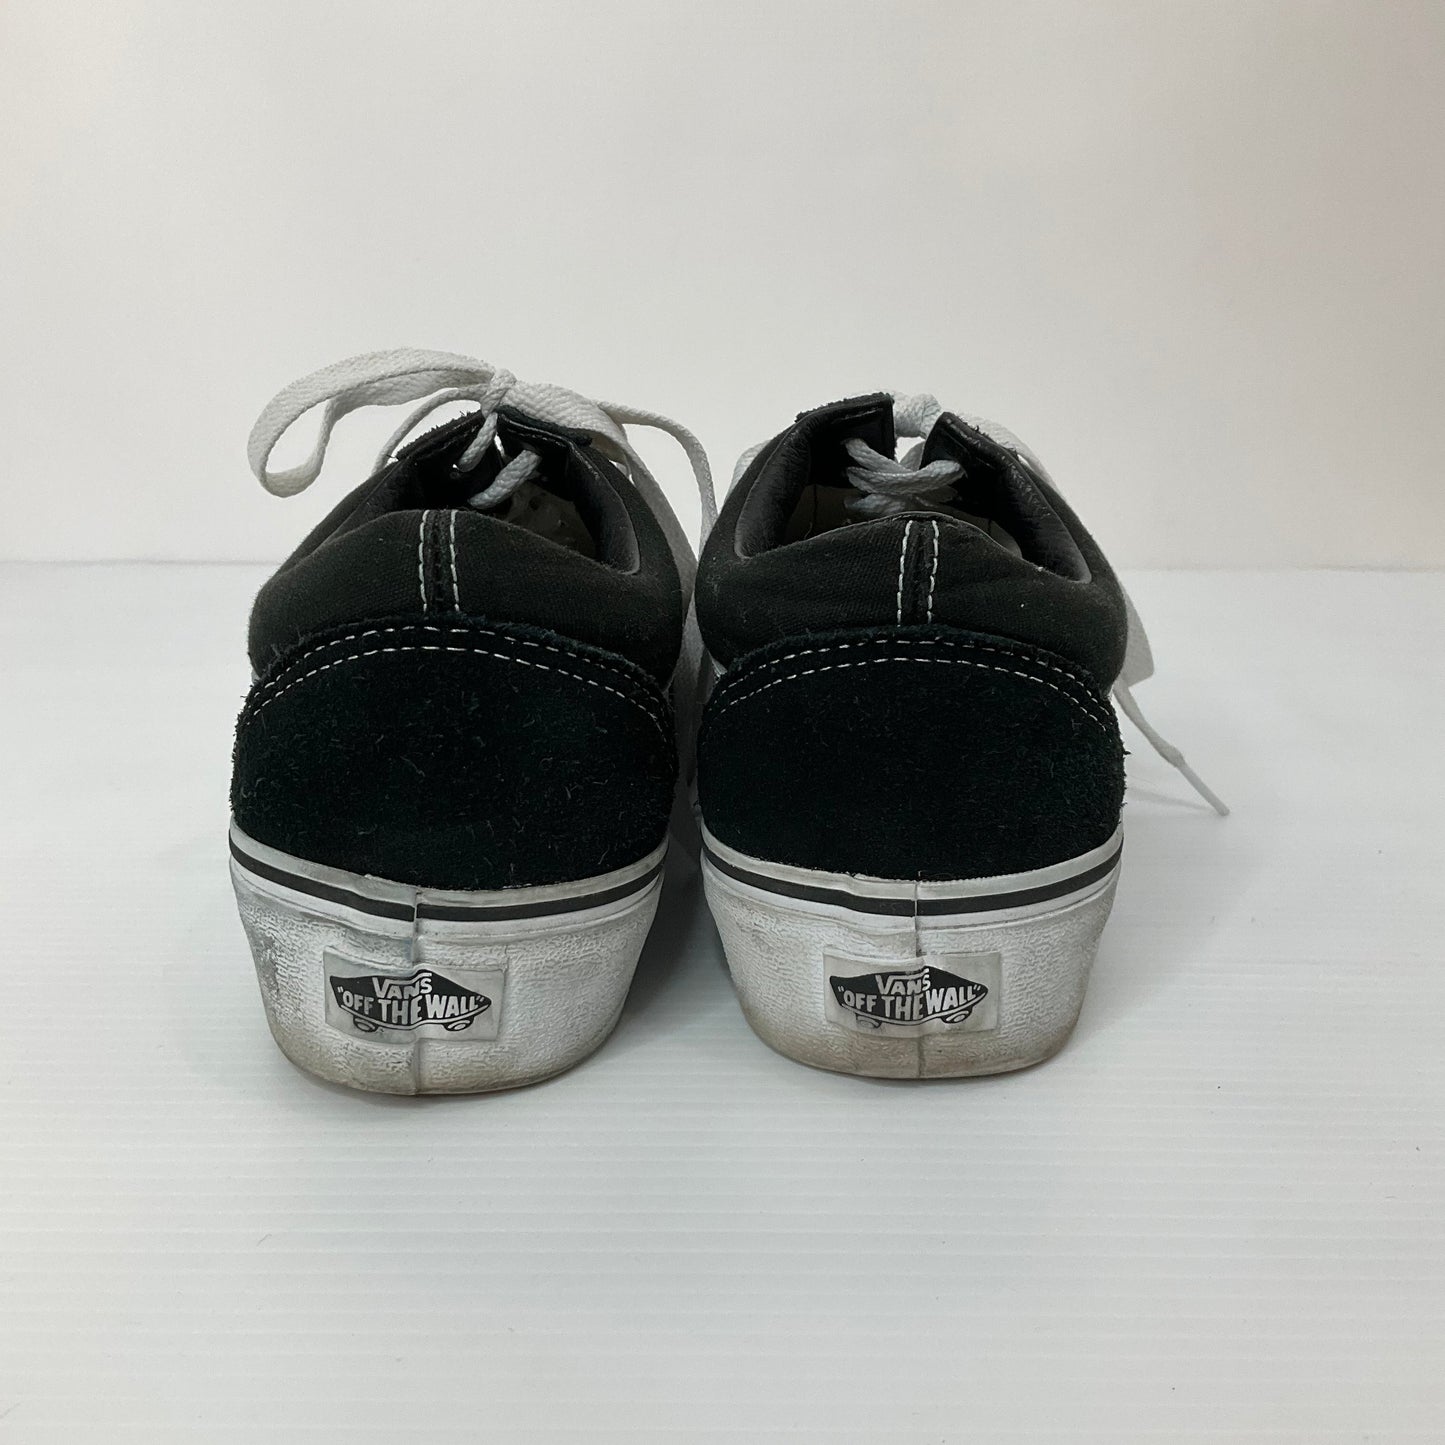 Black & White Shoes Athletic Vans, Size 8